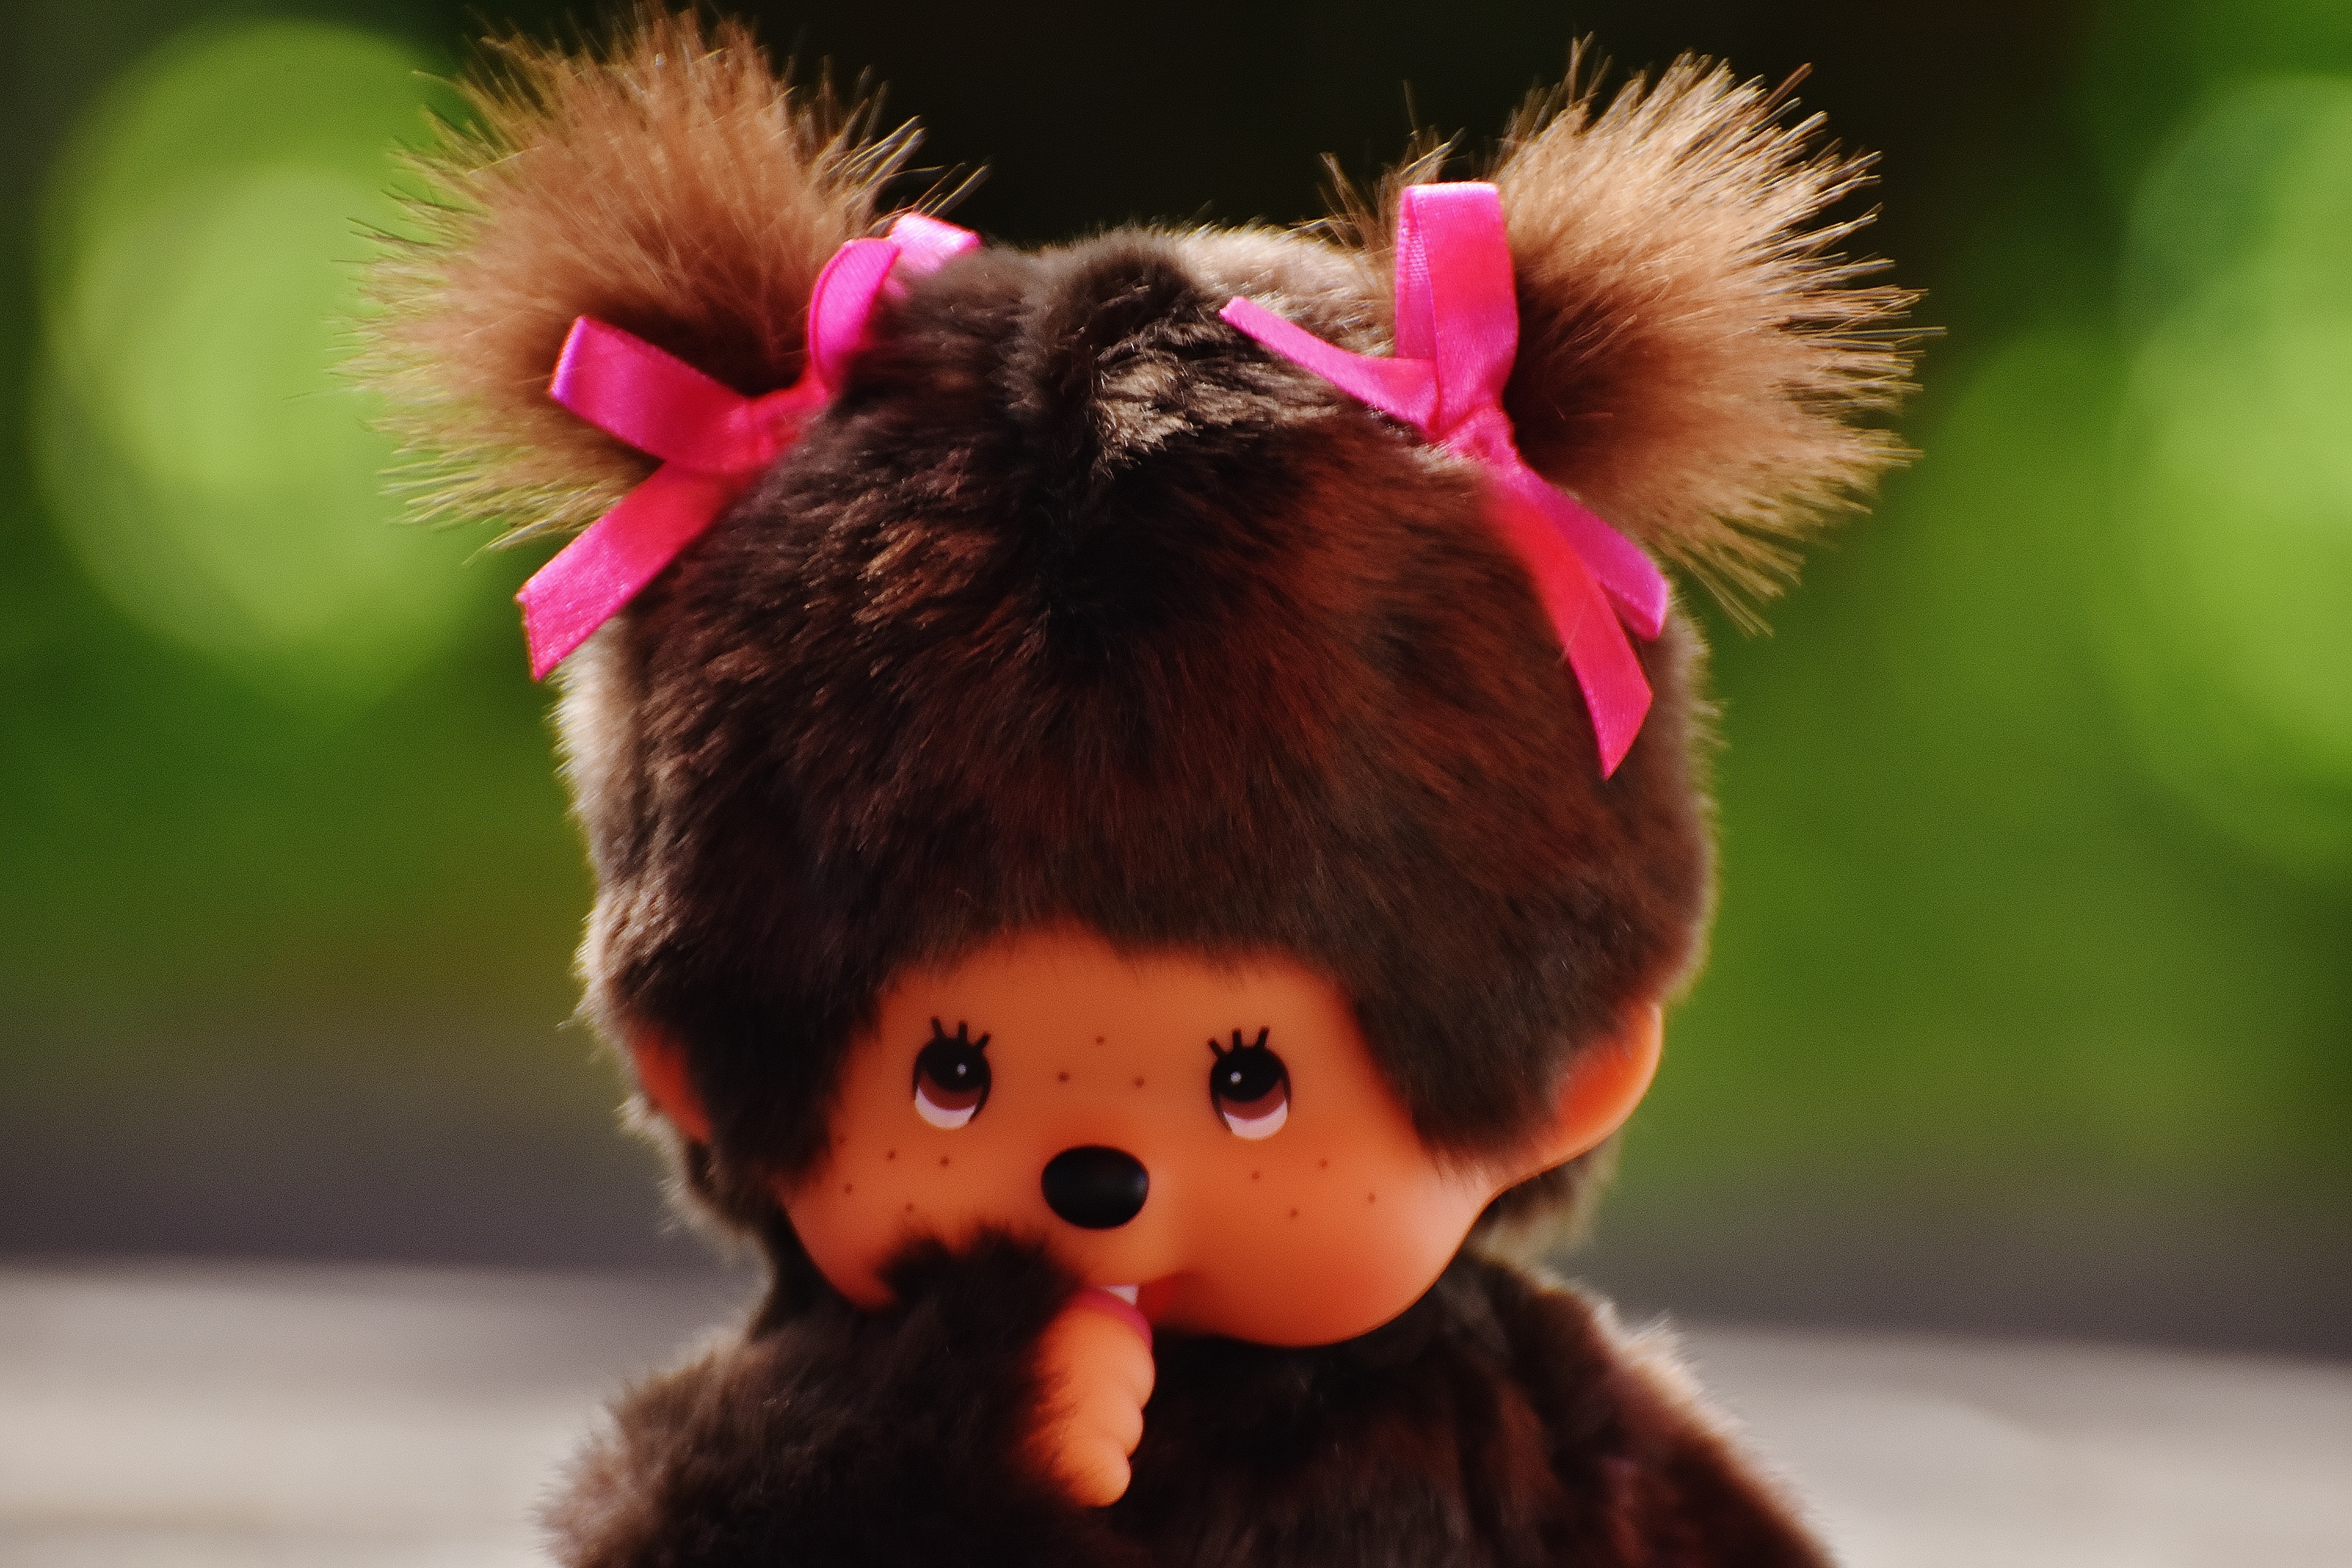 brown animal plush toy